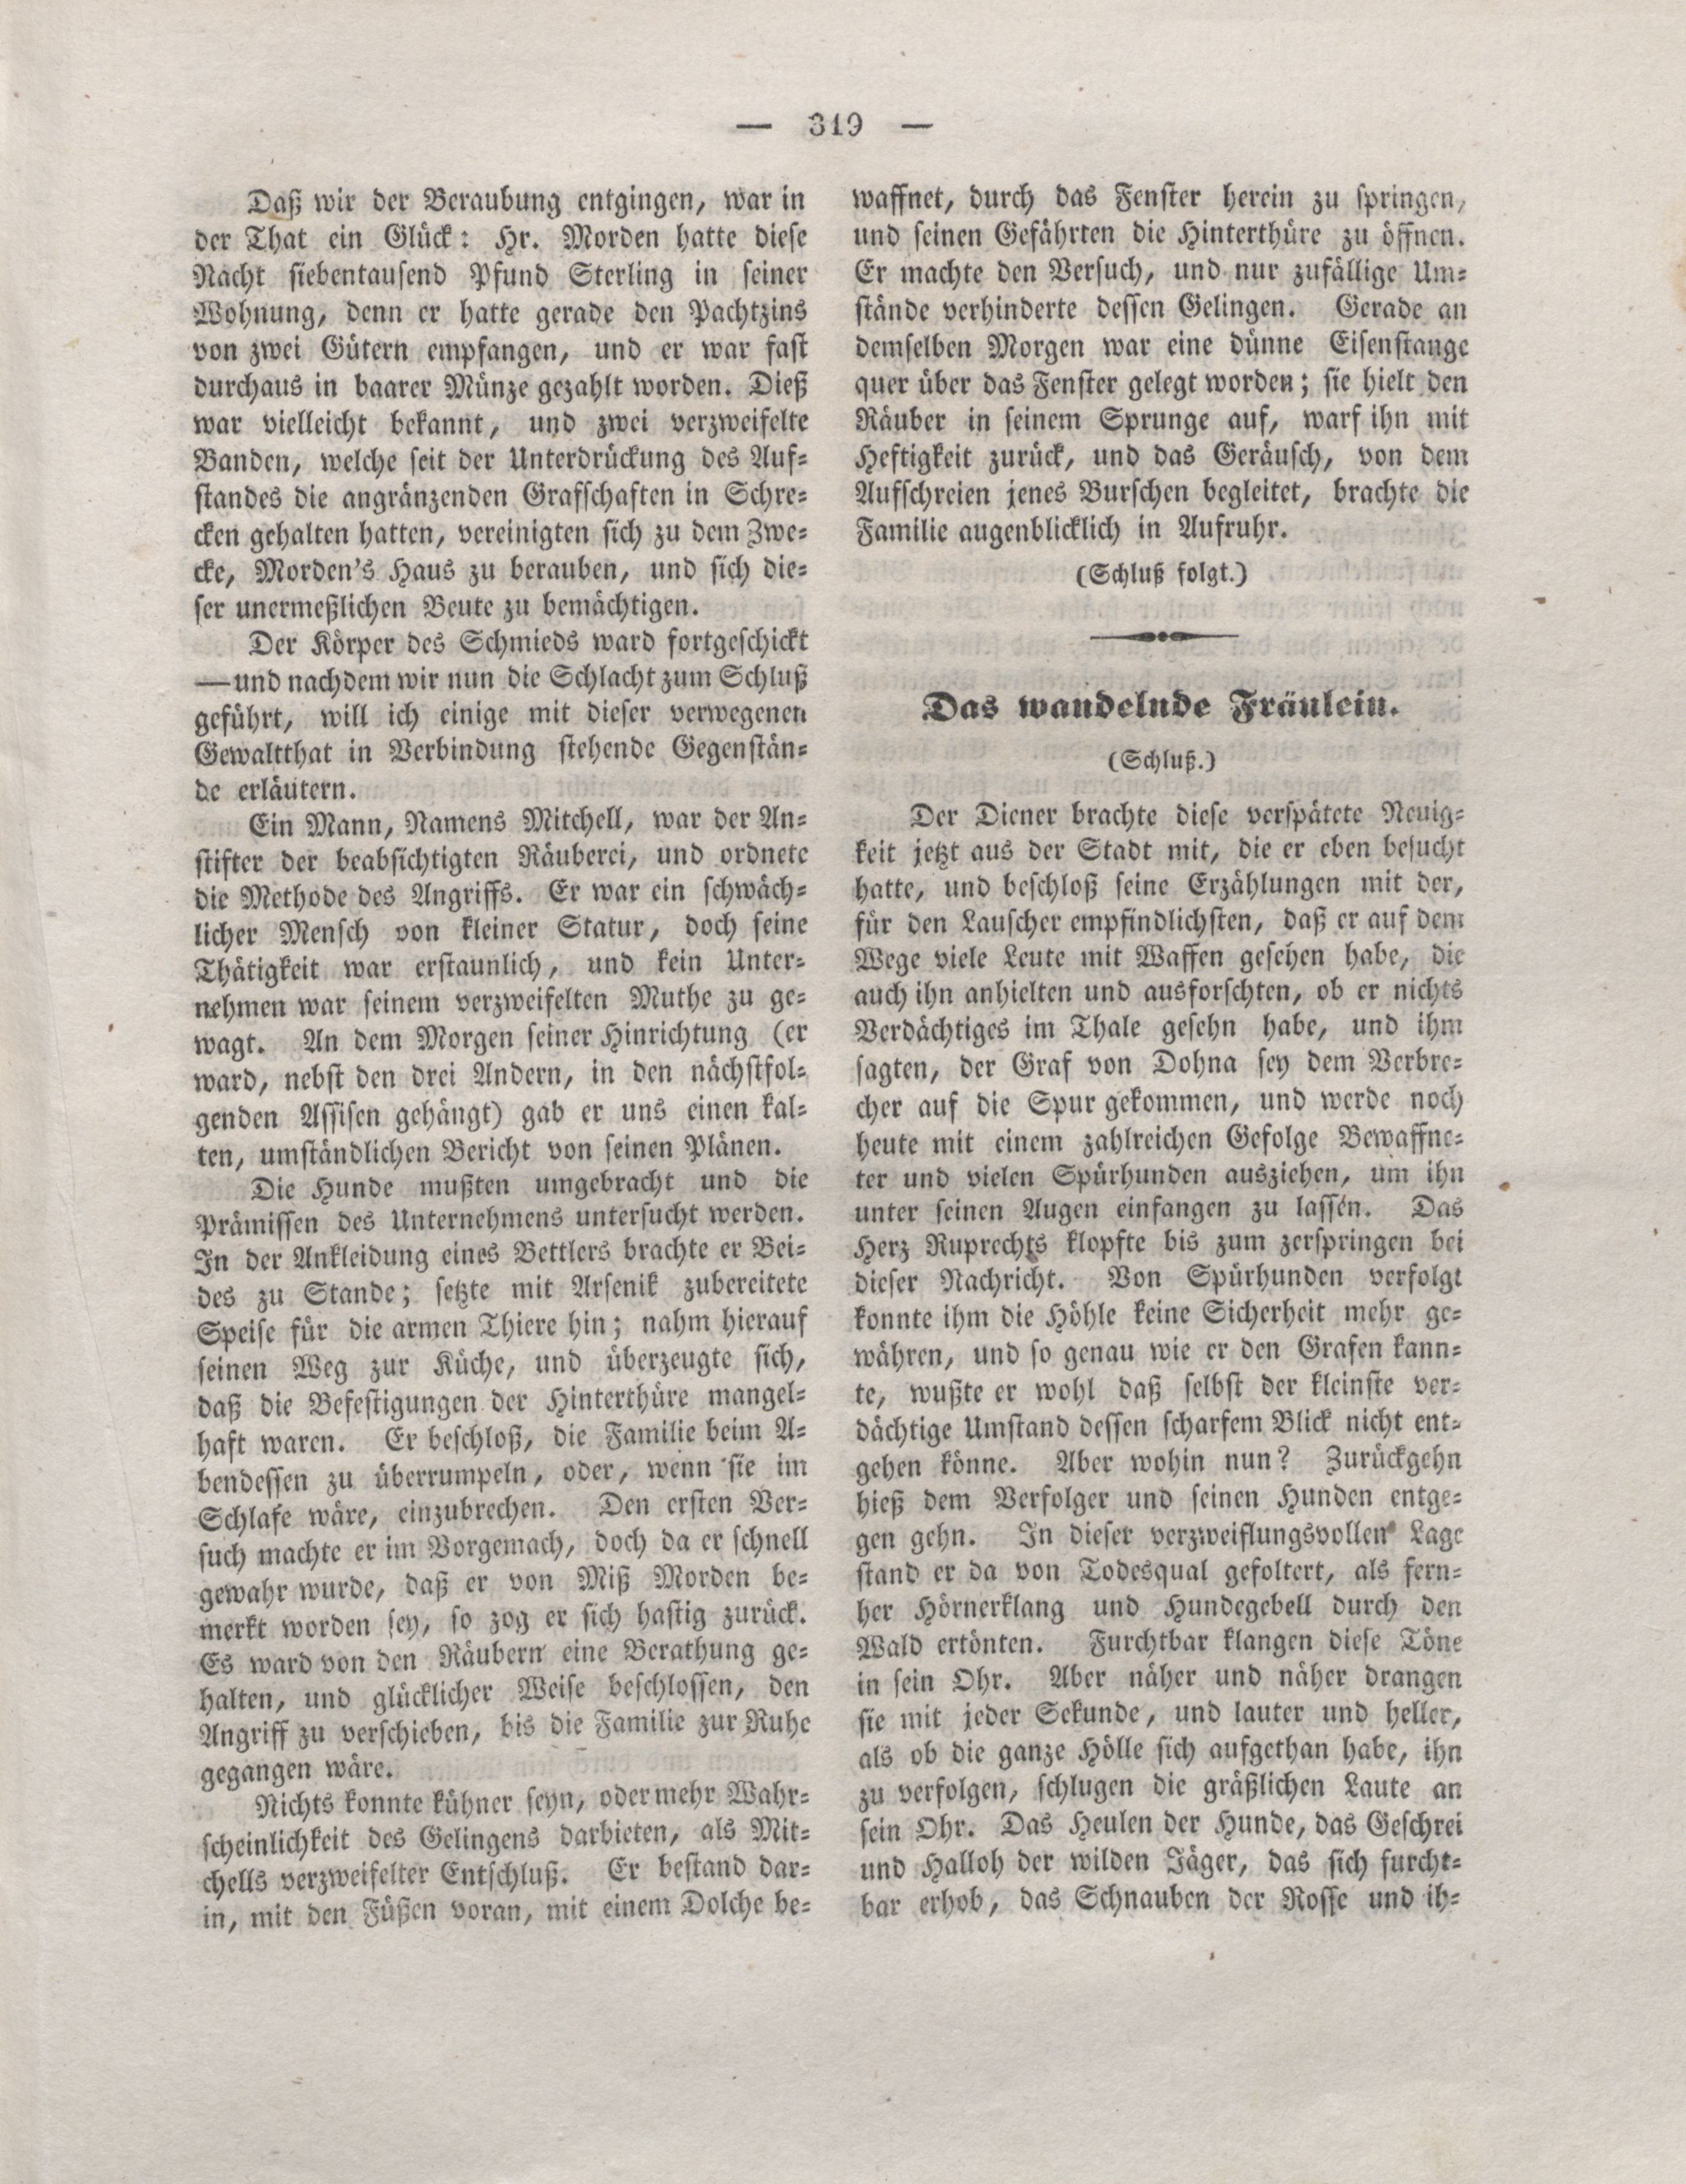 Der Refraktor [1837] (1837) | 35. (319) Haupttext